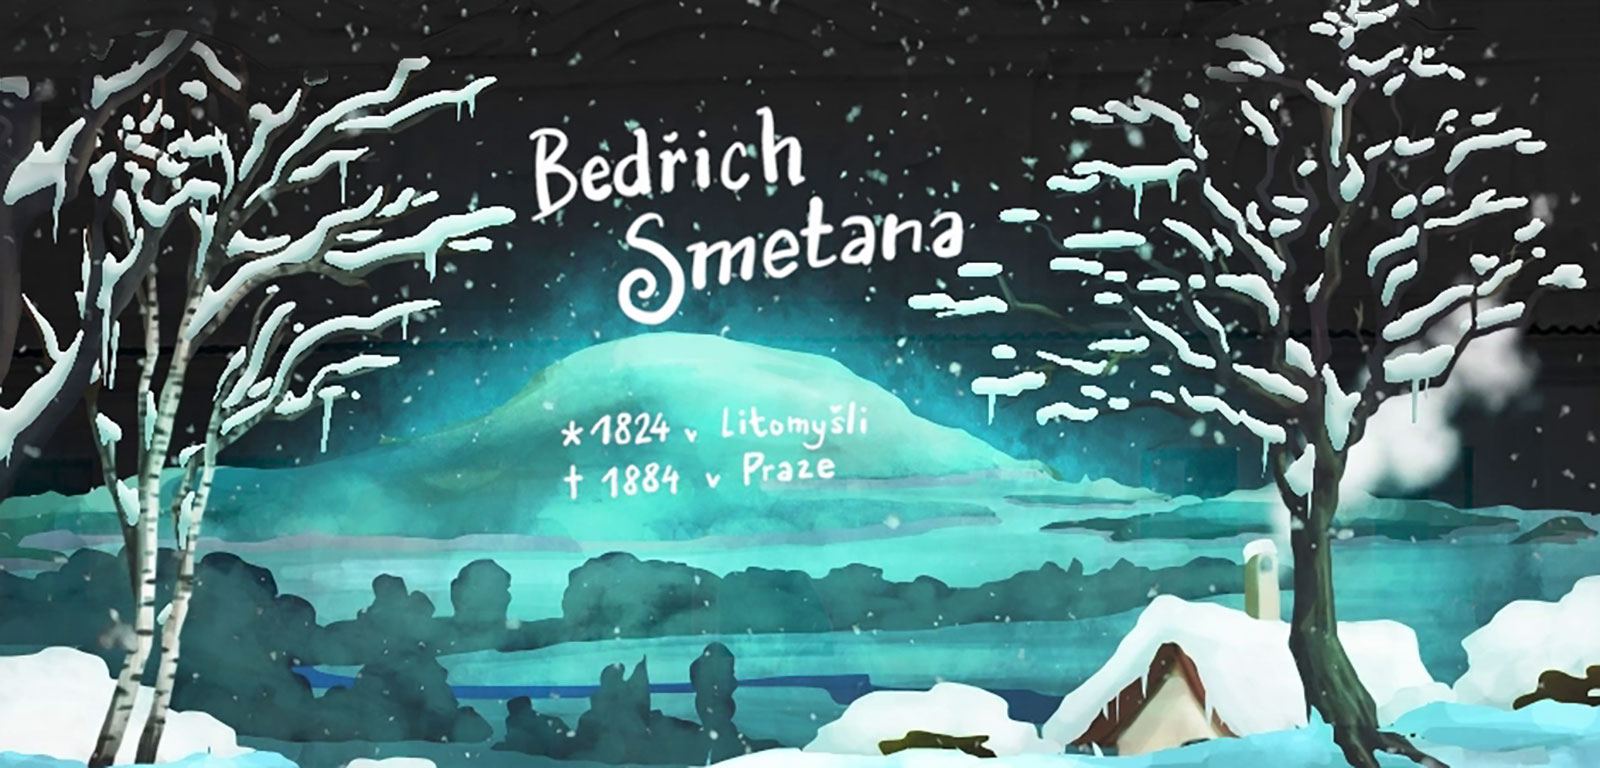 Bedřich Smetana - symfonie života